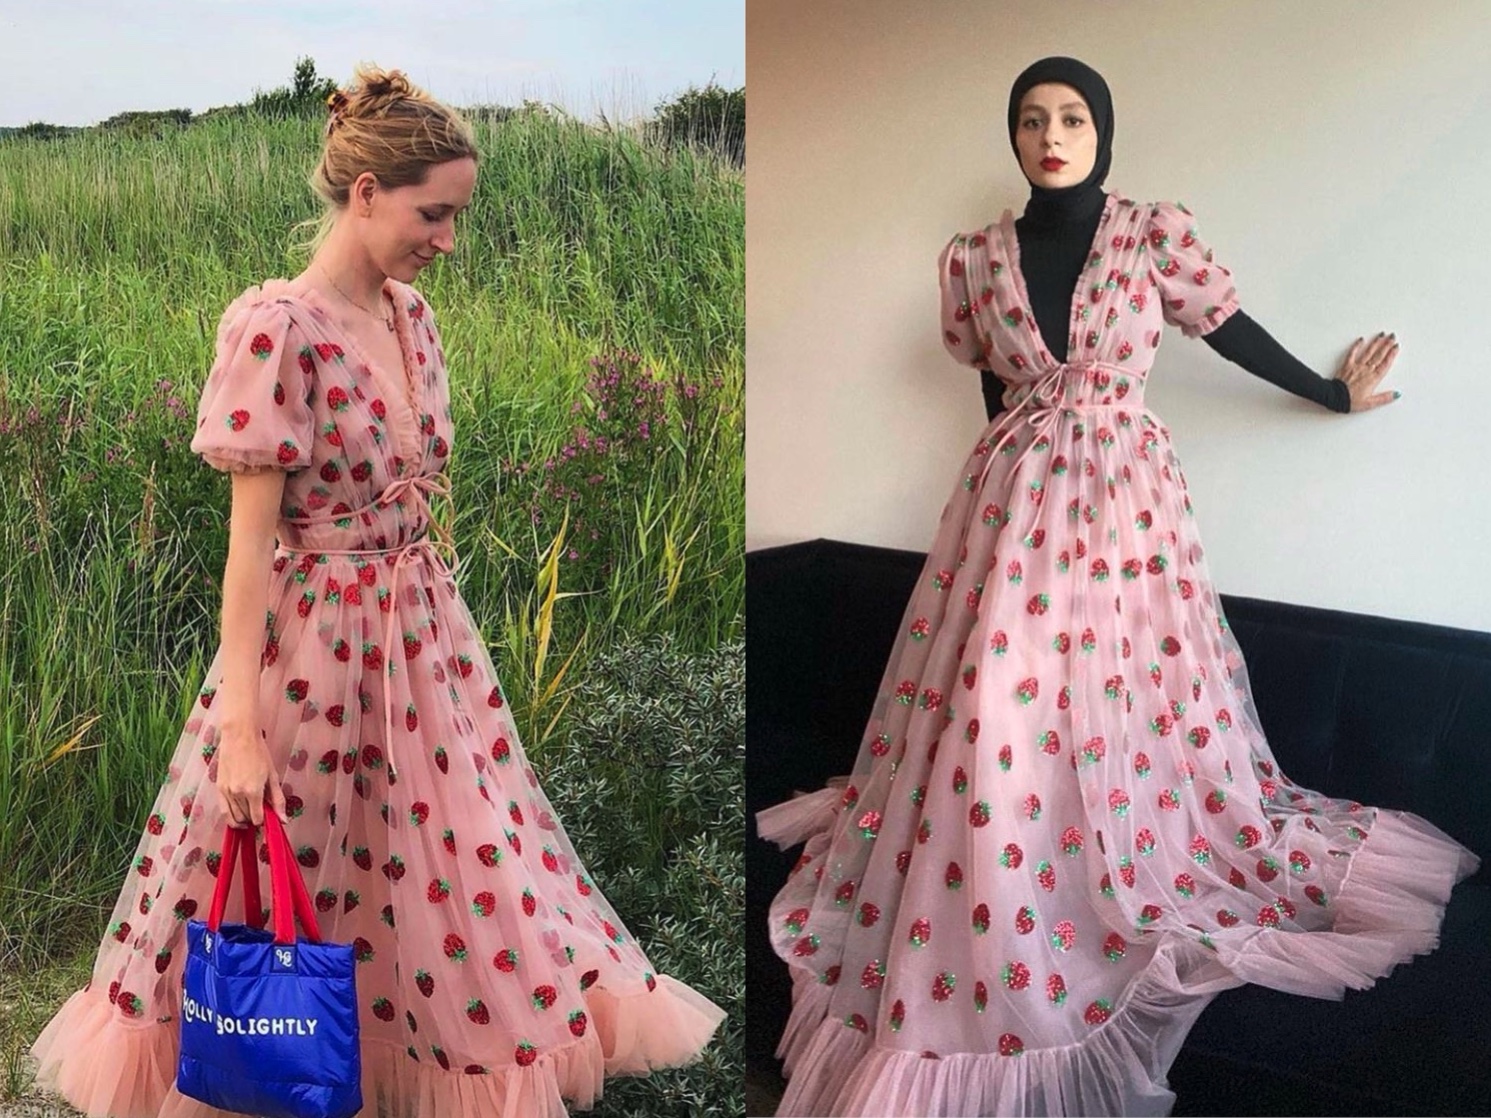 'Strawberry dress' đã trở thành cụm từ hot nhất Tiktok và Twitter trong mùa hè năm ngoái. Rất nhiều cô nàng trên toàn thế giới đã cố gắng để sở hữu chiếc váy ngọt ngào này. Thậm chí sau khi trở thành hot trend, chiếc váy dâu tây đã liên tục trong tình trạng 'cháy hàng'